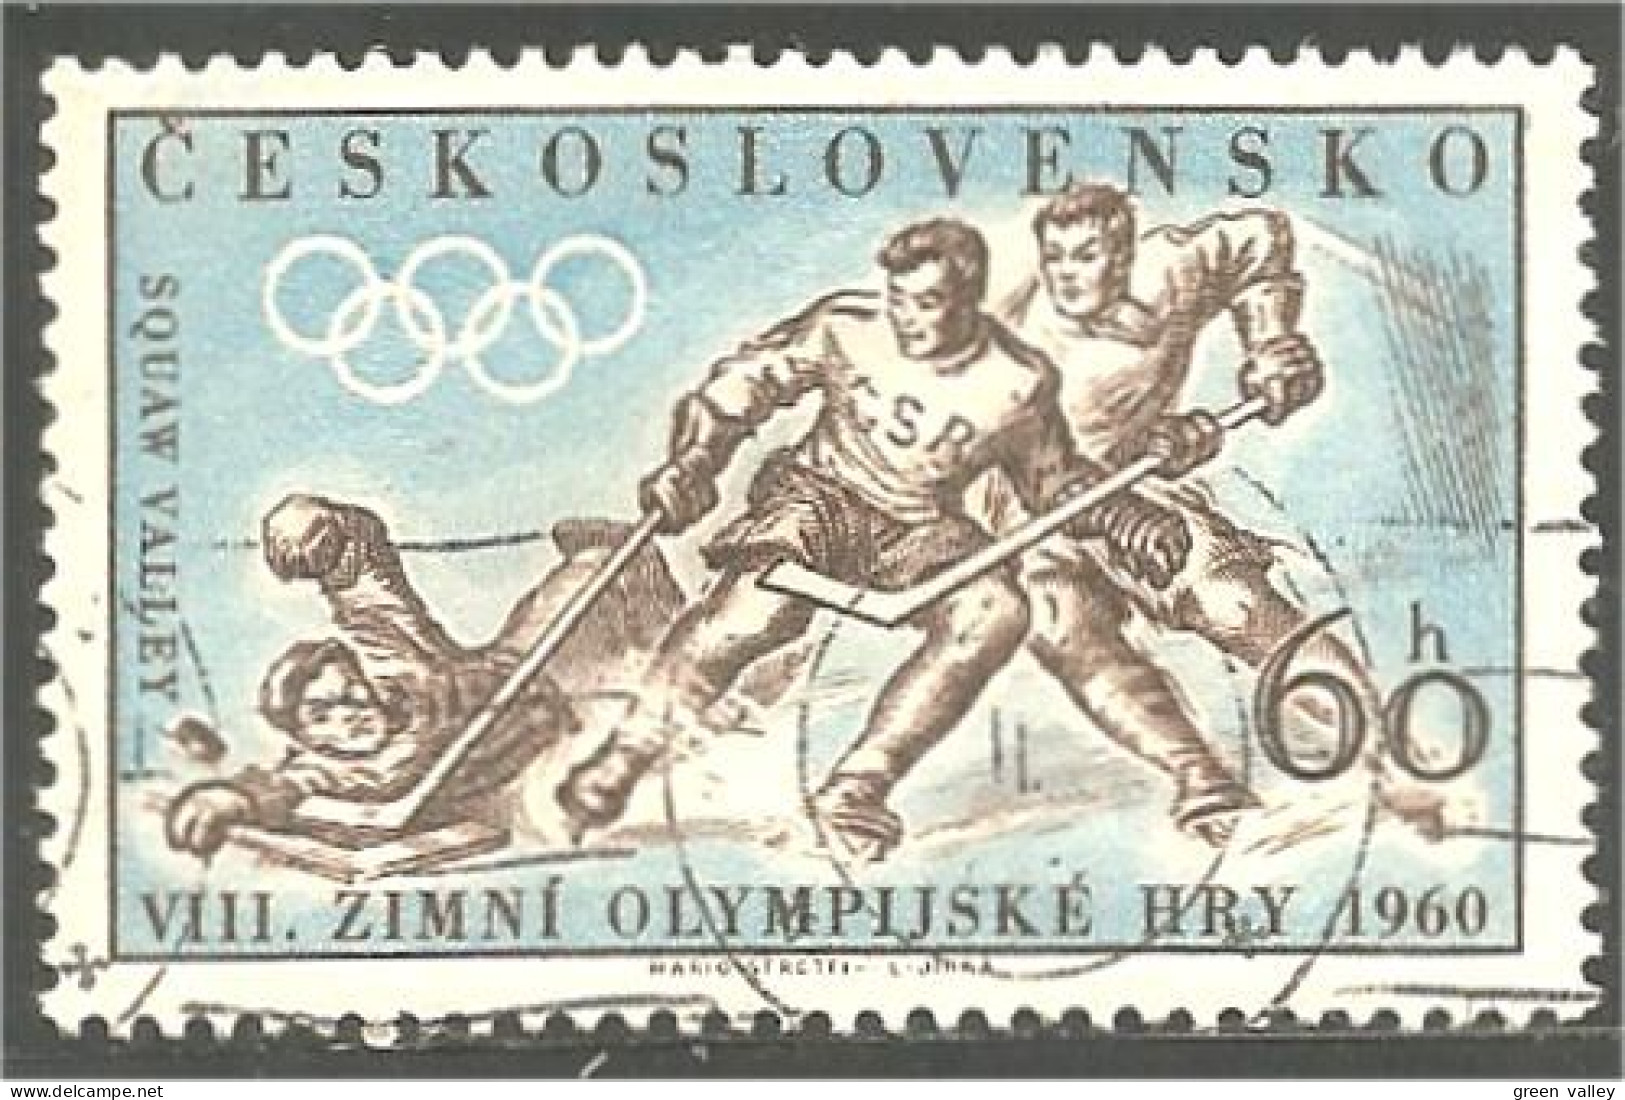 290 Czechoslovakia Ice Hockey Glace Eishockey (CZE-219) - Hockey (Ice)